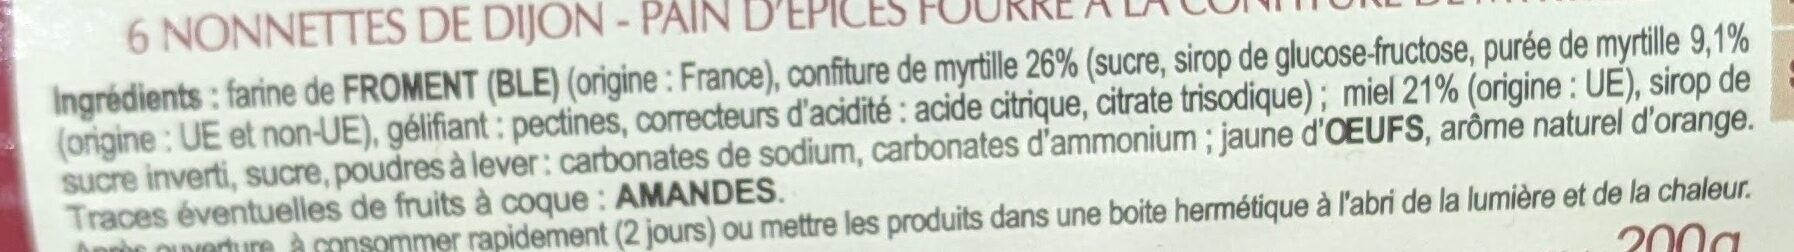 Nonnettes myrtille - Ingrédients